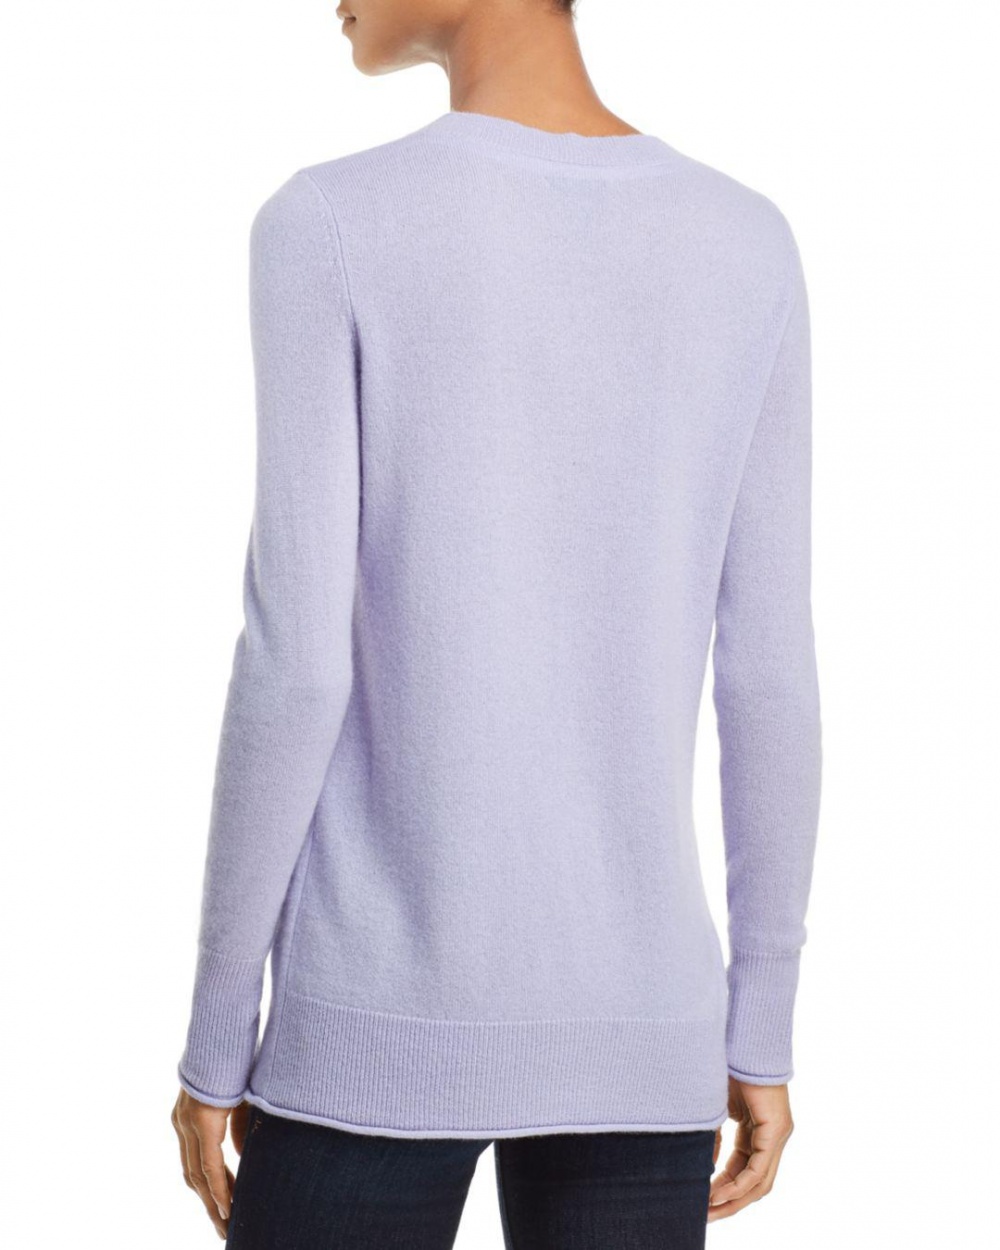 Кашемировый свитер Aqua Cashmere, размер XL (48-52)